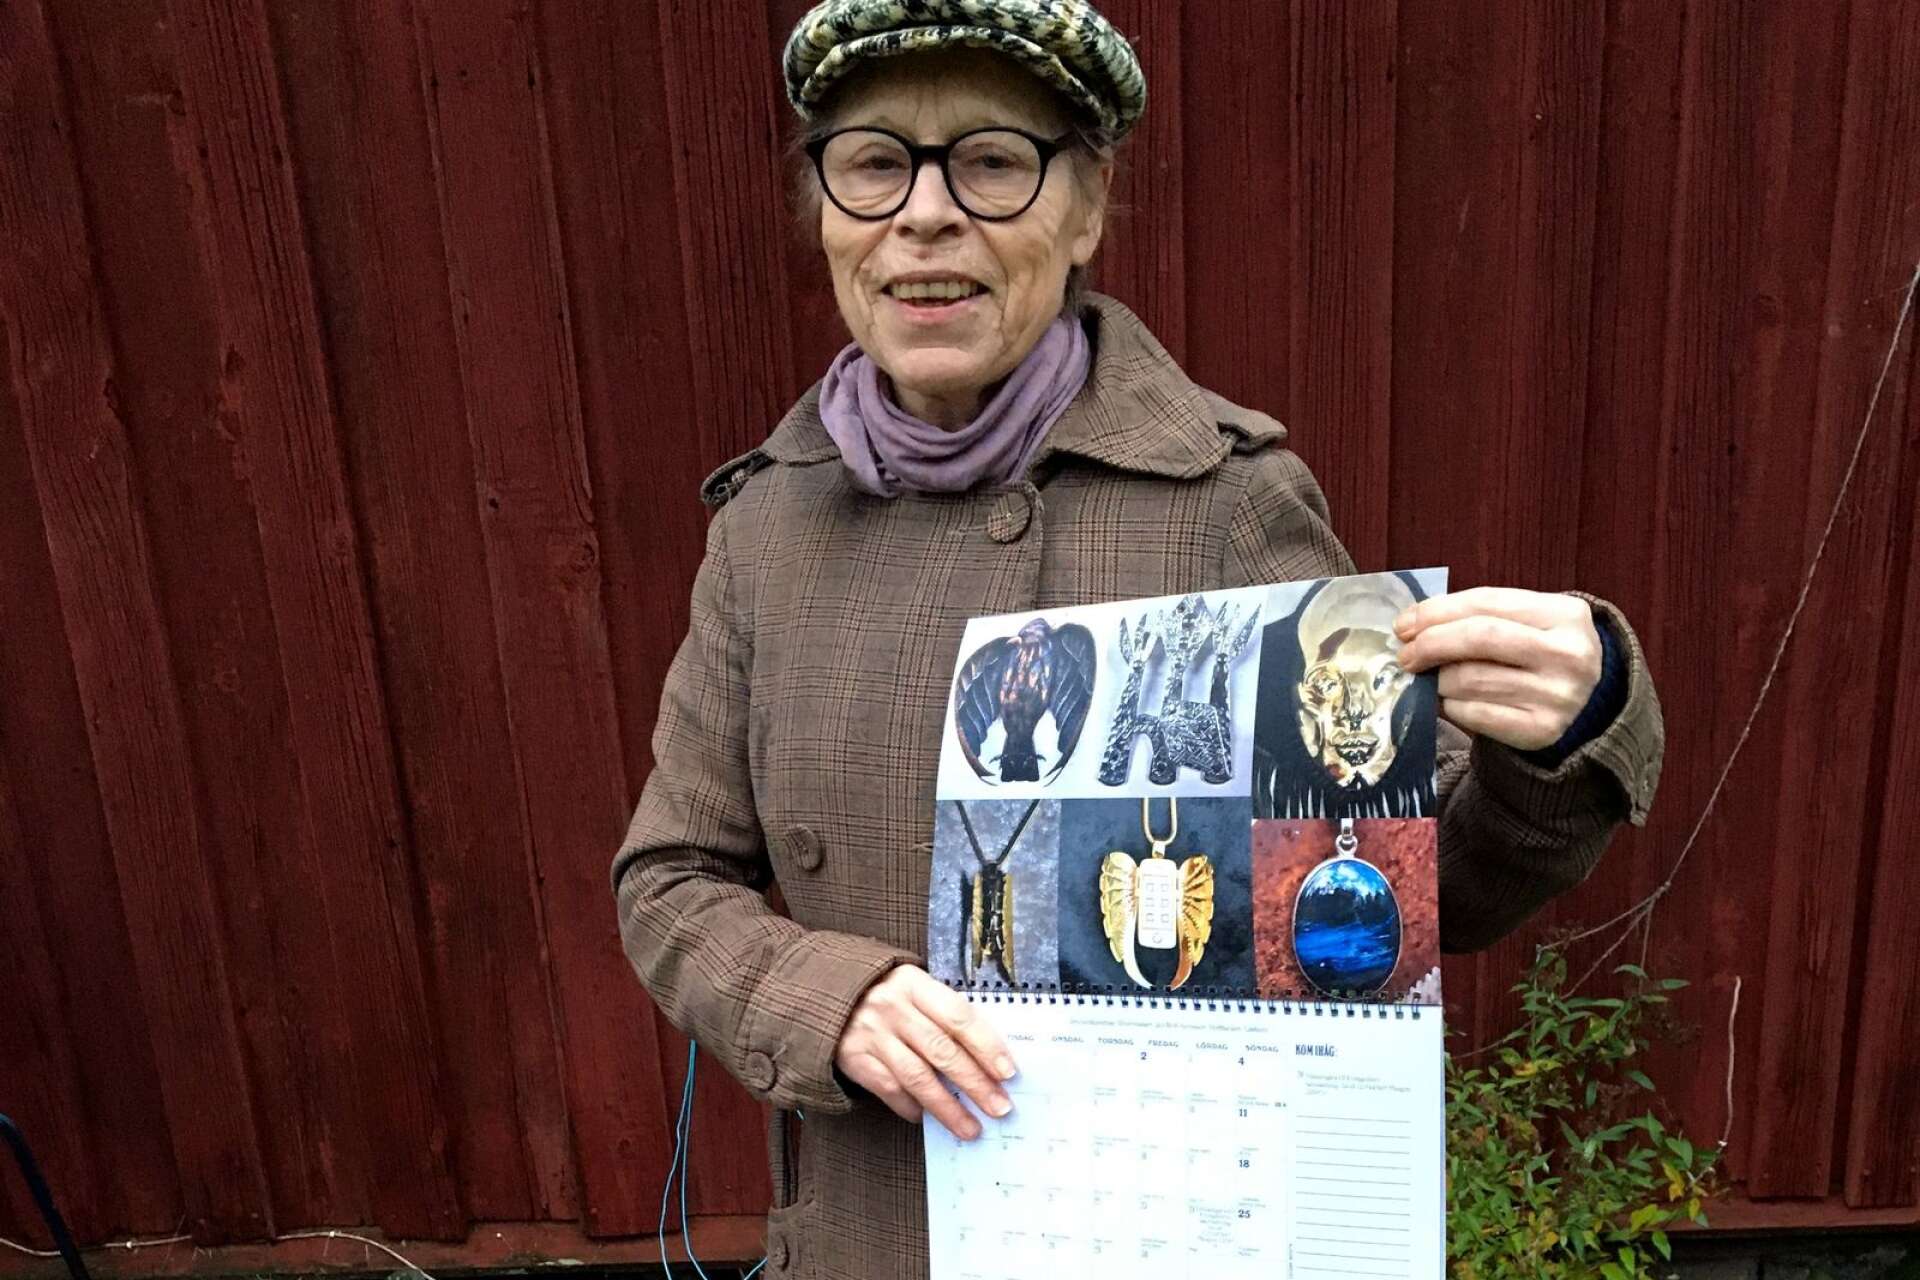 Britt Aronsson är guldsmed och skulptör - här visar hon sitt kalenderuppslag.